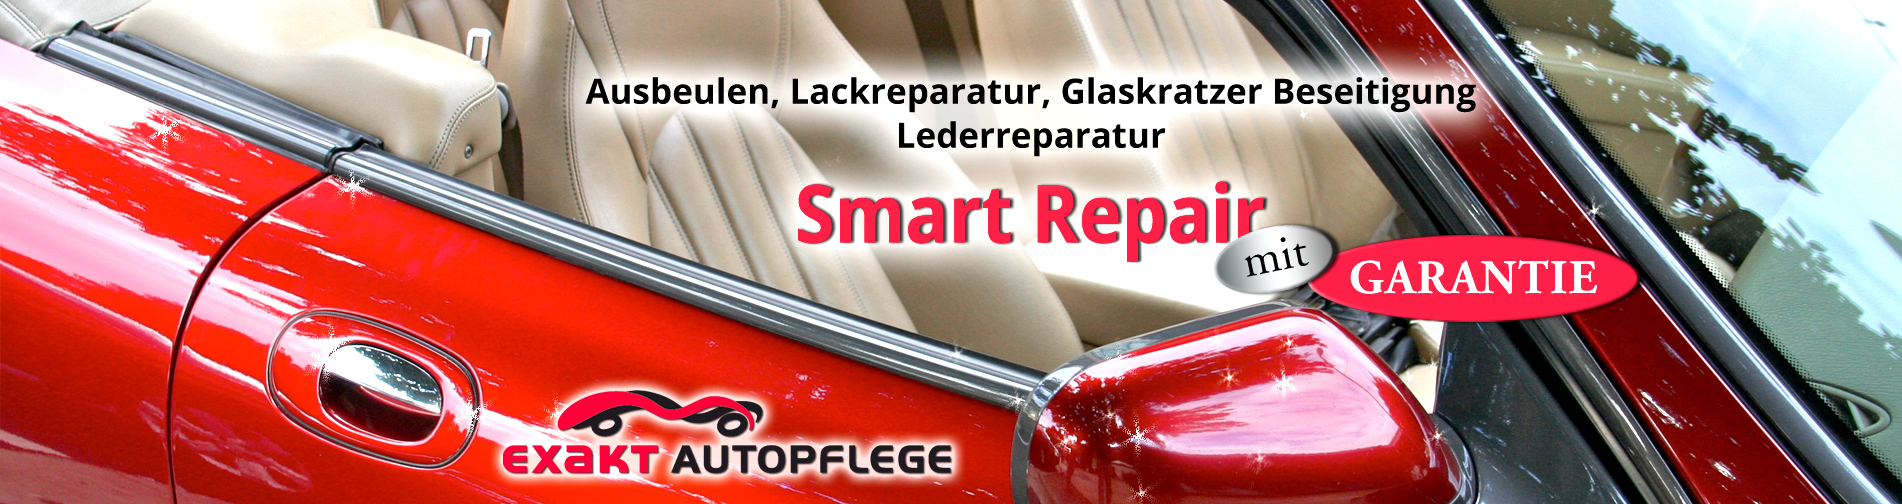 Smart Repair mit Garantie